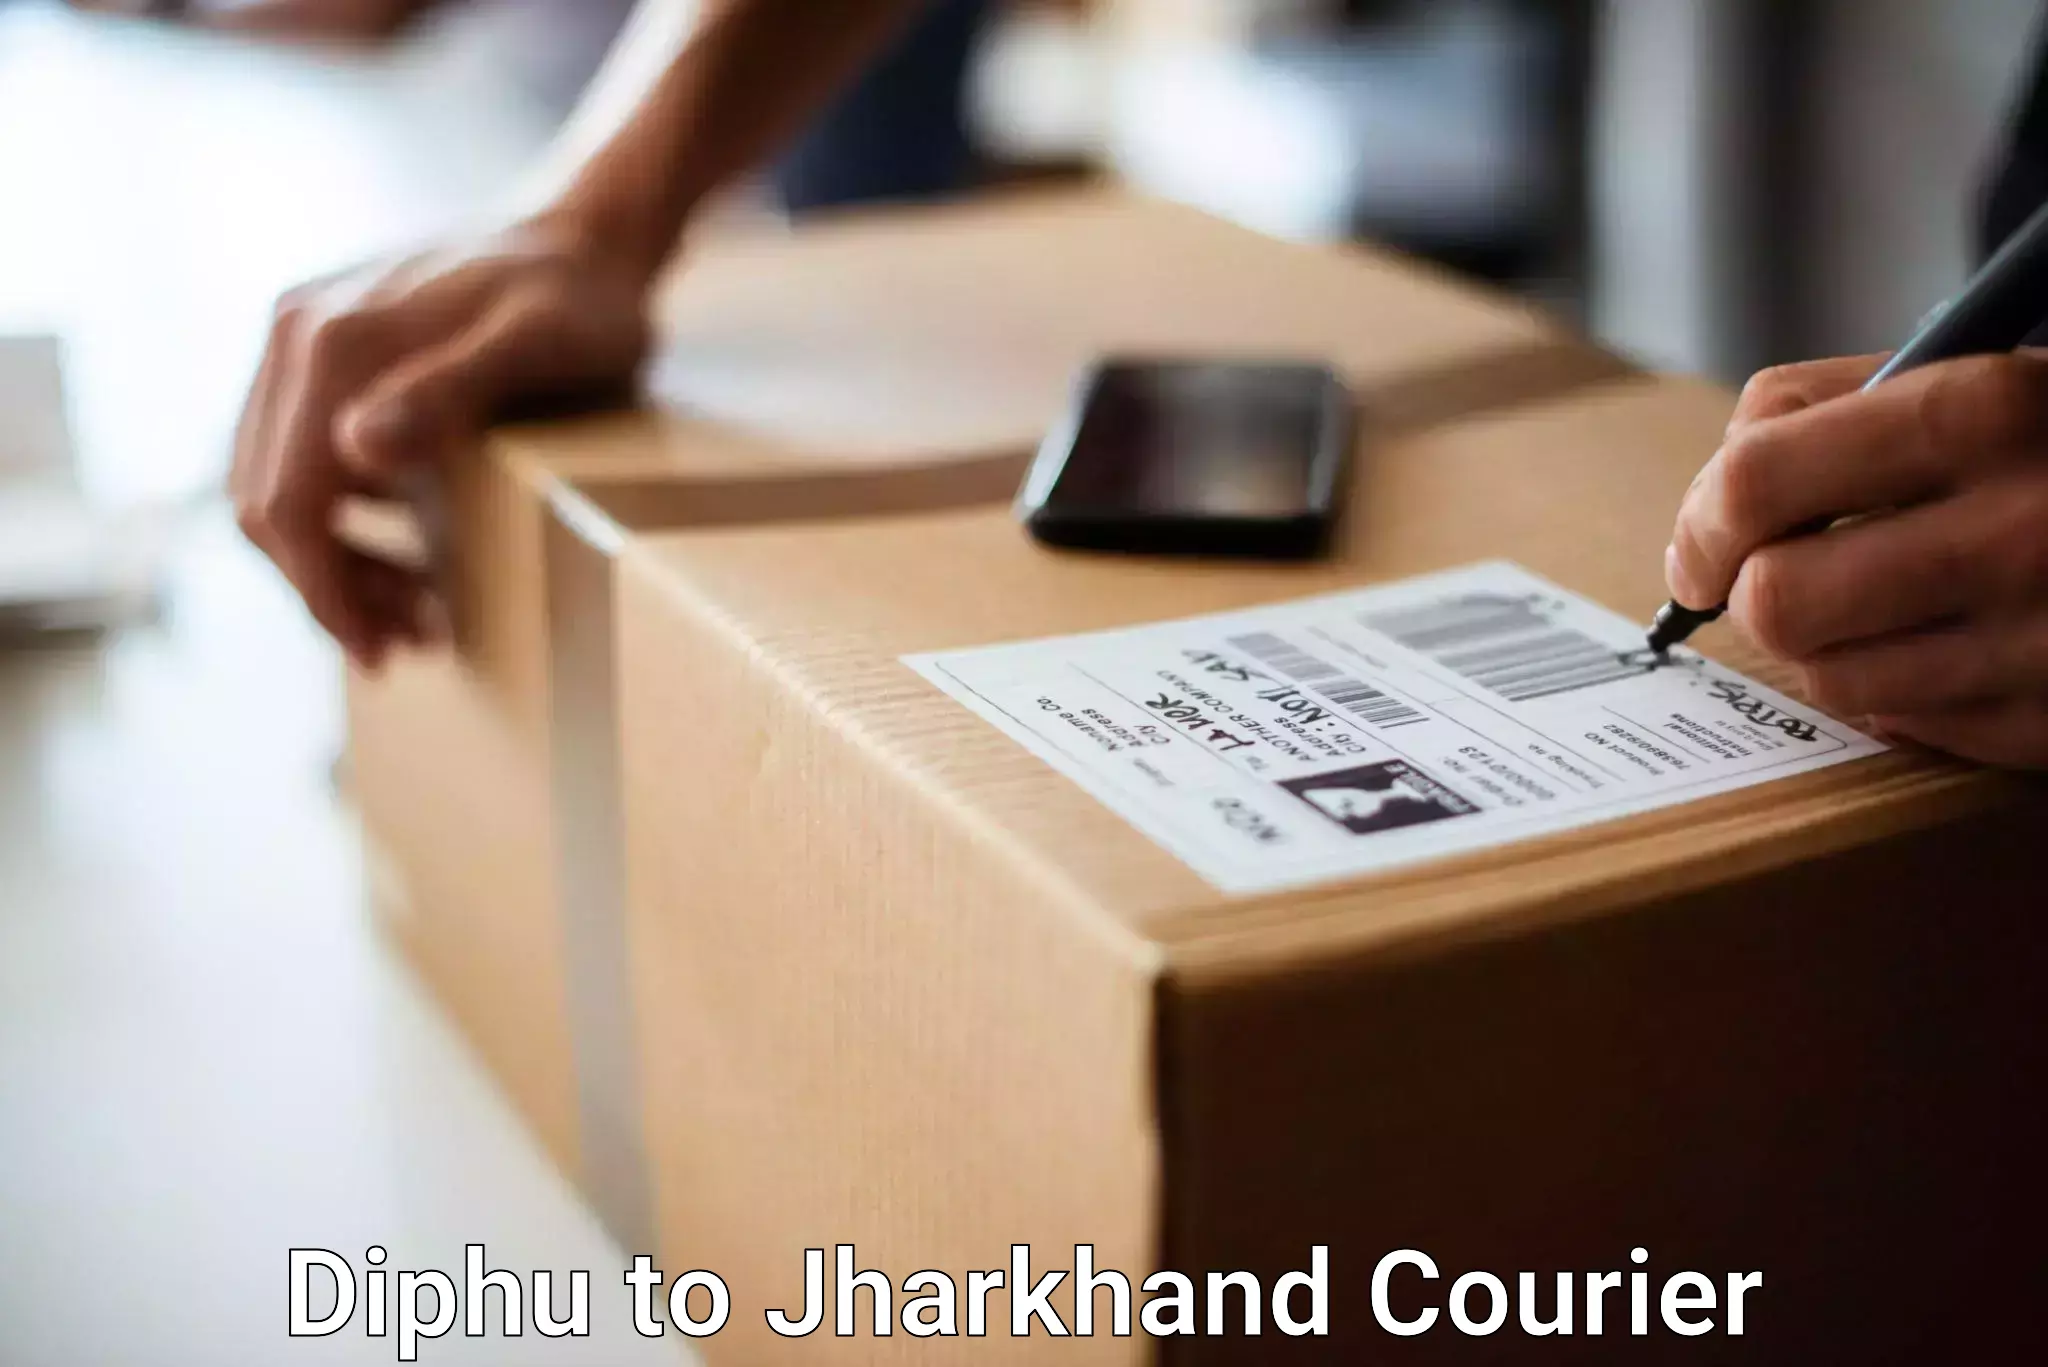 Luggage shipment tracking Diphu to Seraikela Kharsawan